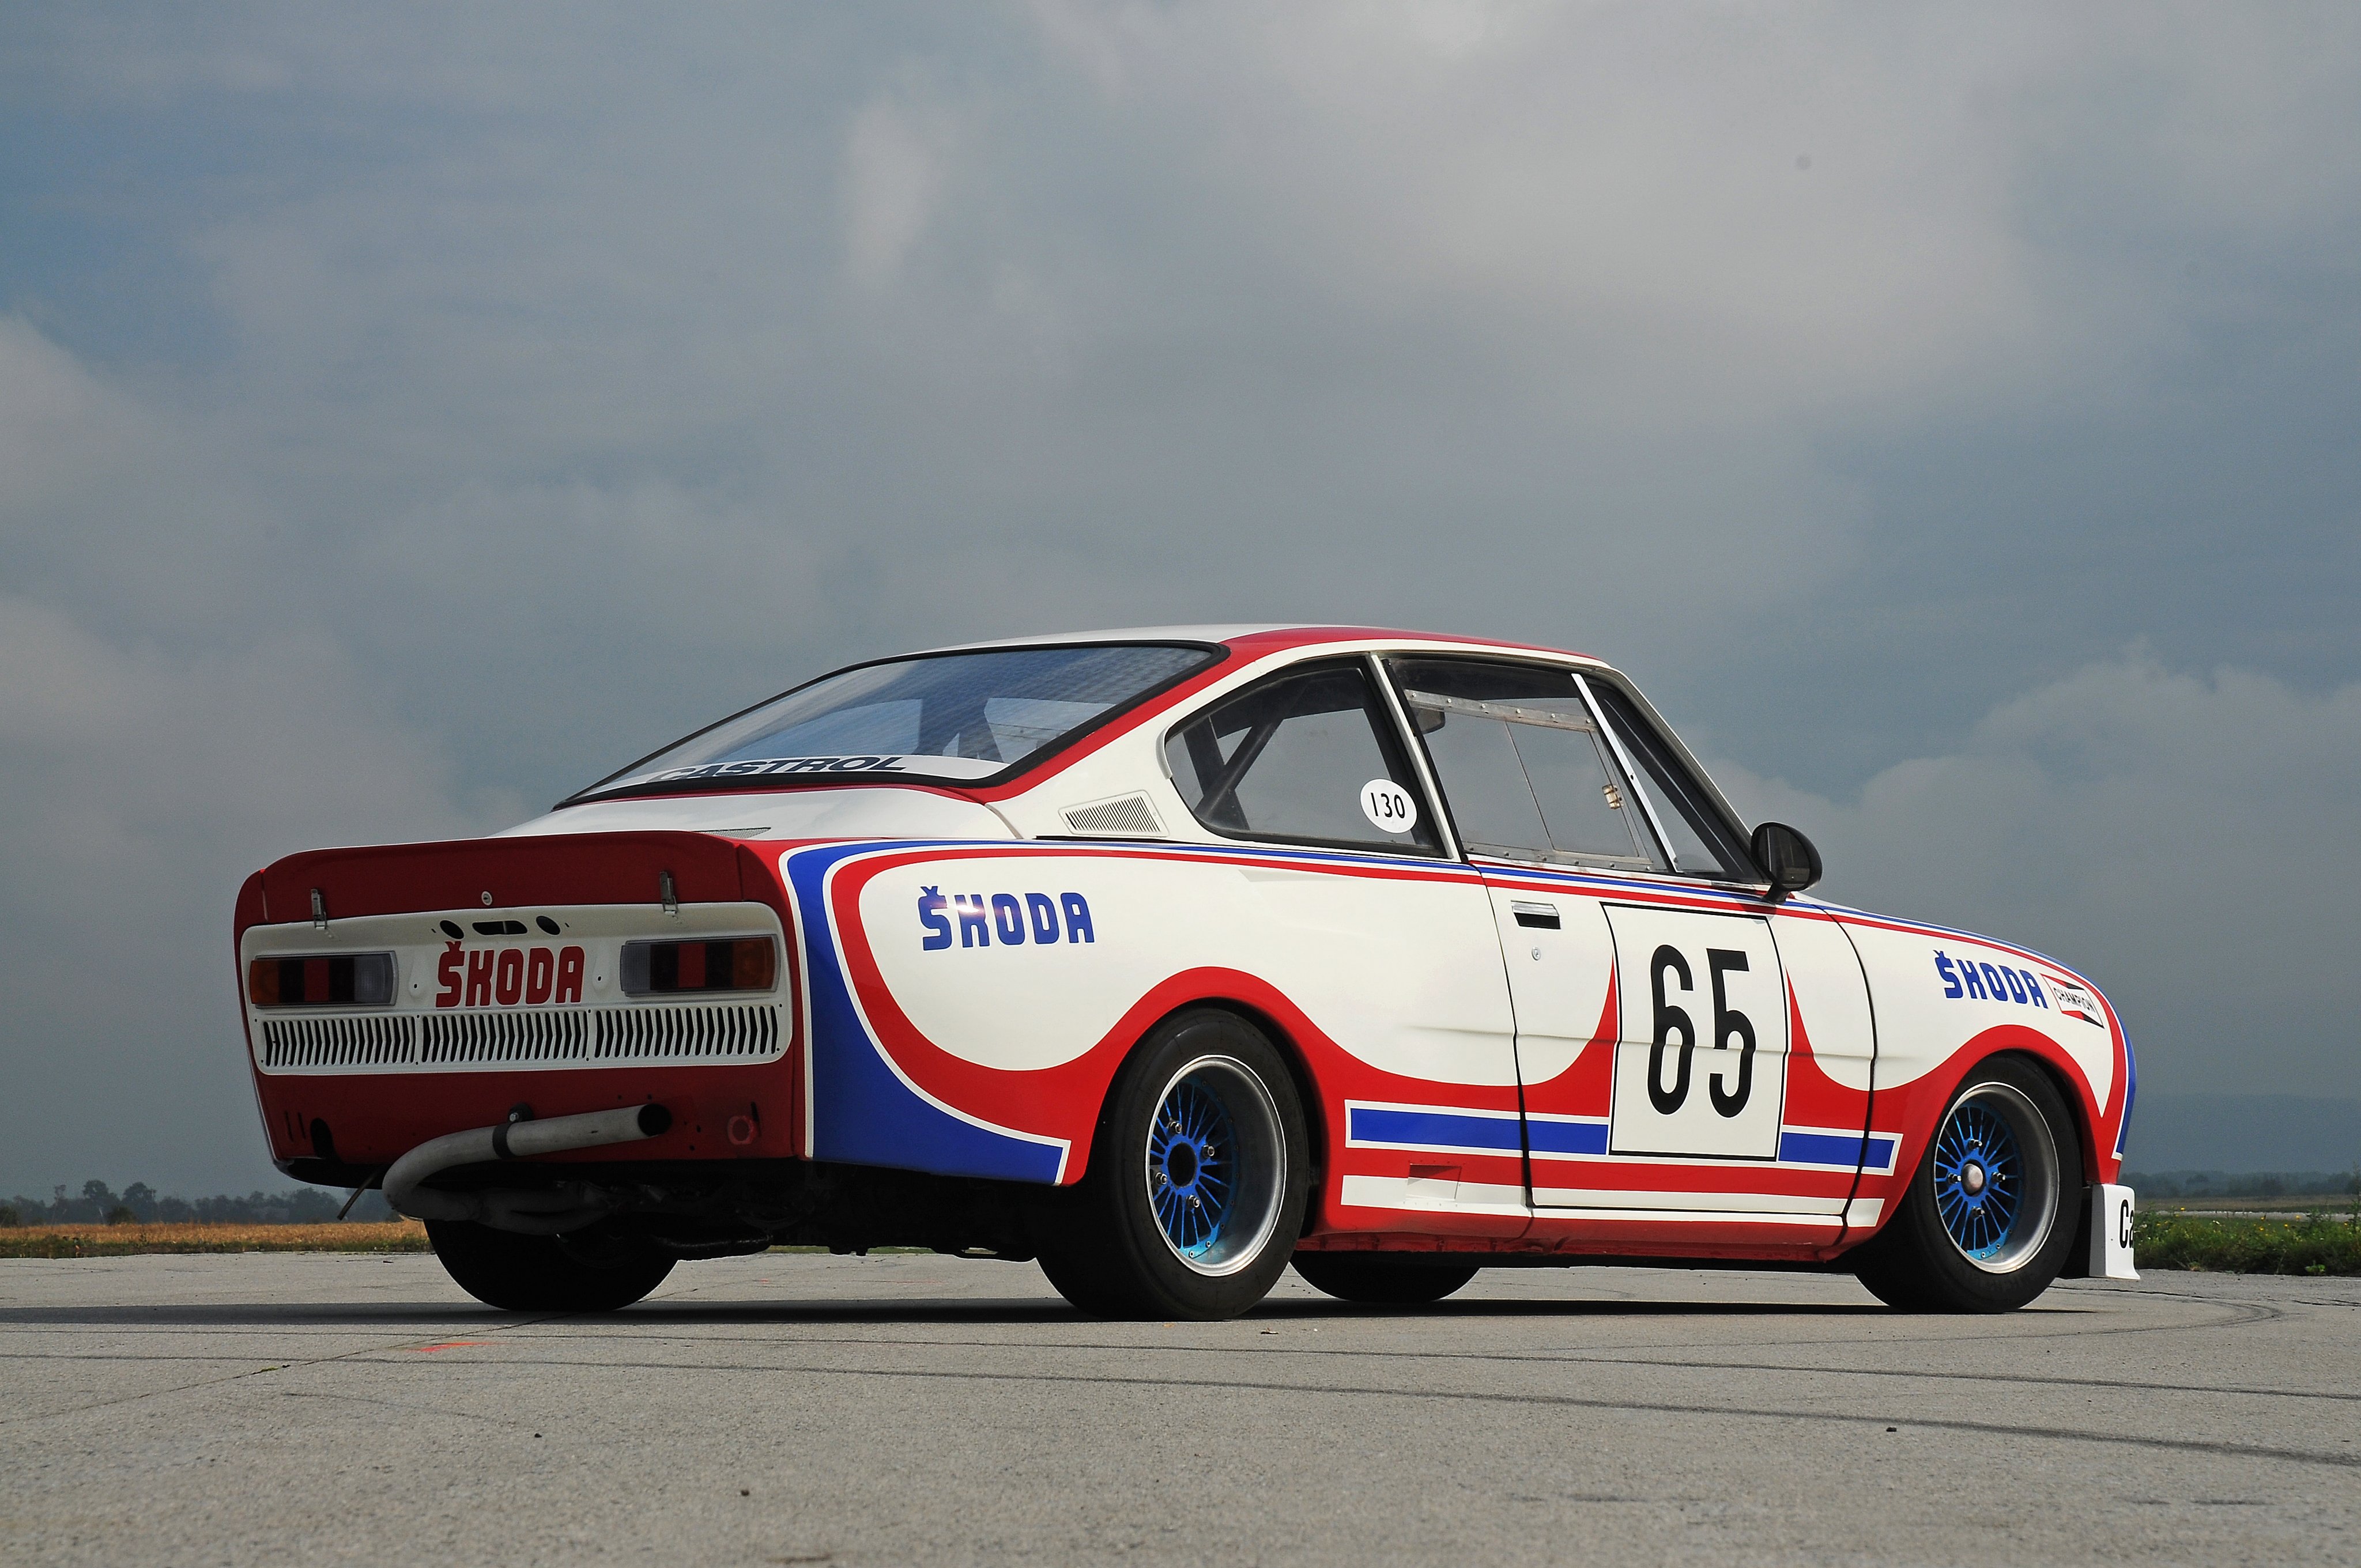 1975 81, Skoda, 130, R s, Type 735, Race, Racing, Rally, Cup Wallpaper